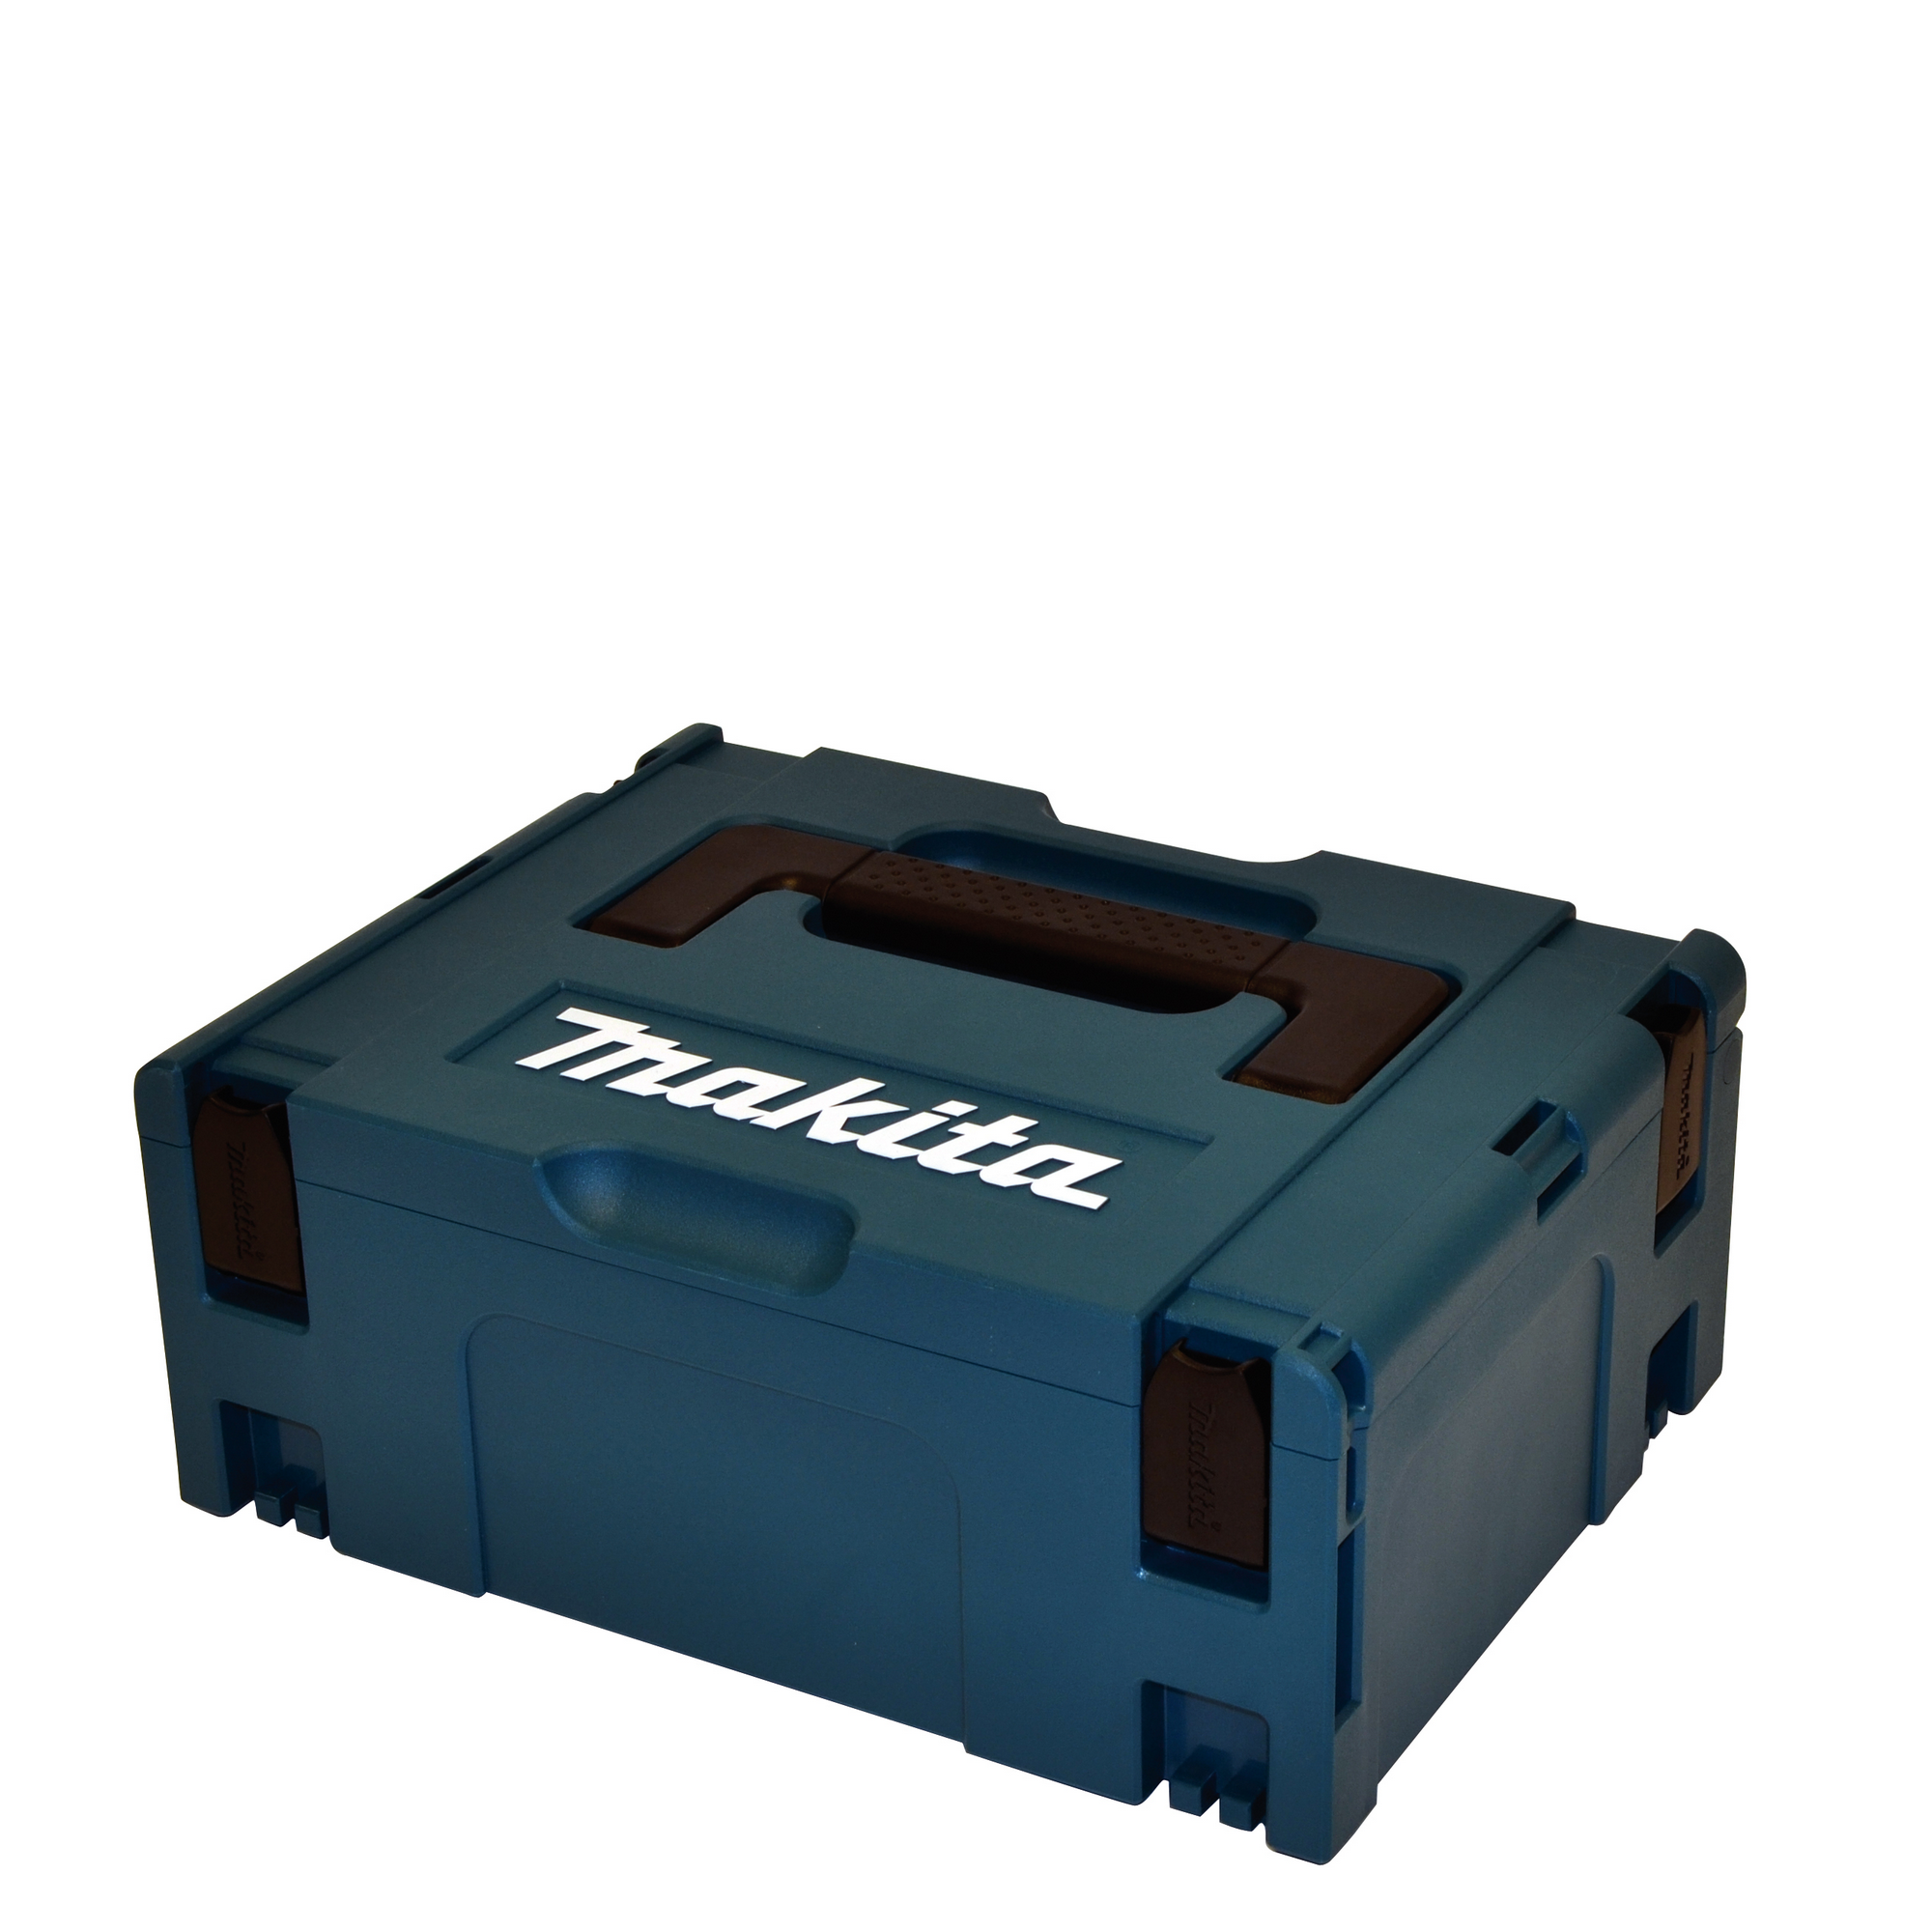 Makpac-Transportkoffer mit Schaumstoffeinlage, Größe 2, 39,5 x 29,5 x 16,3 cm + product picture